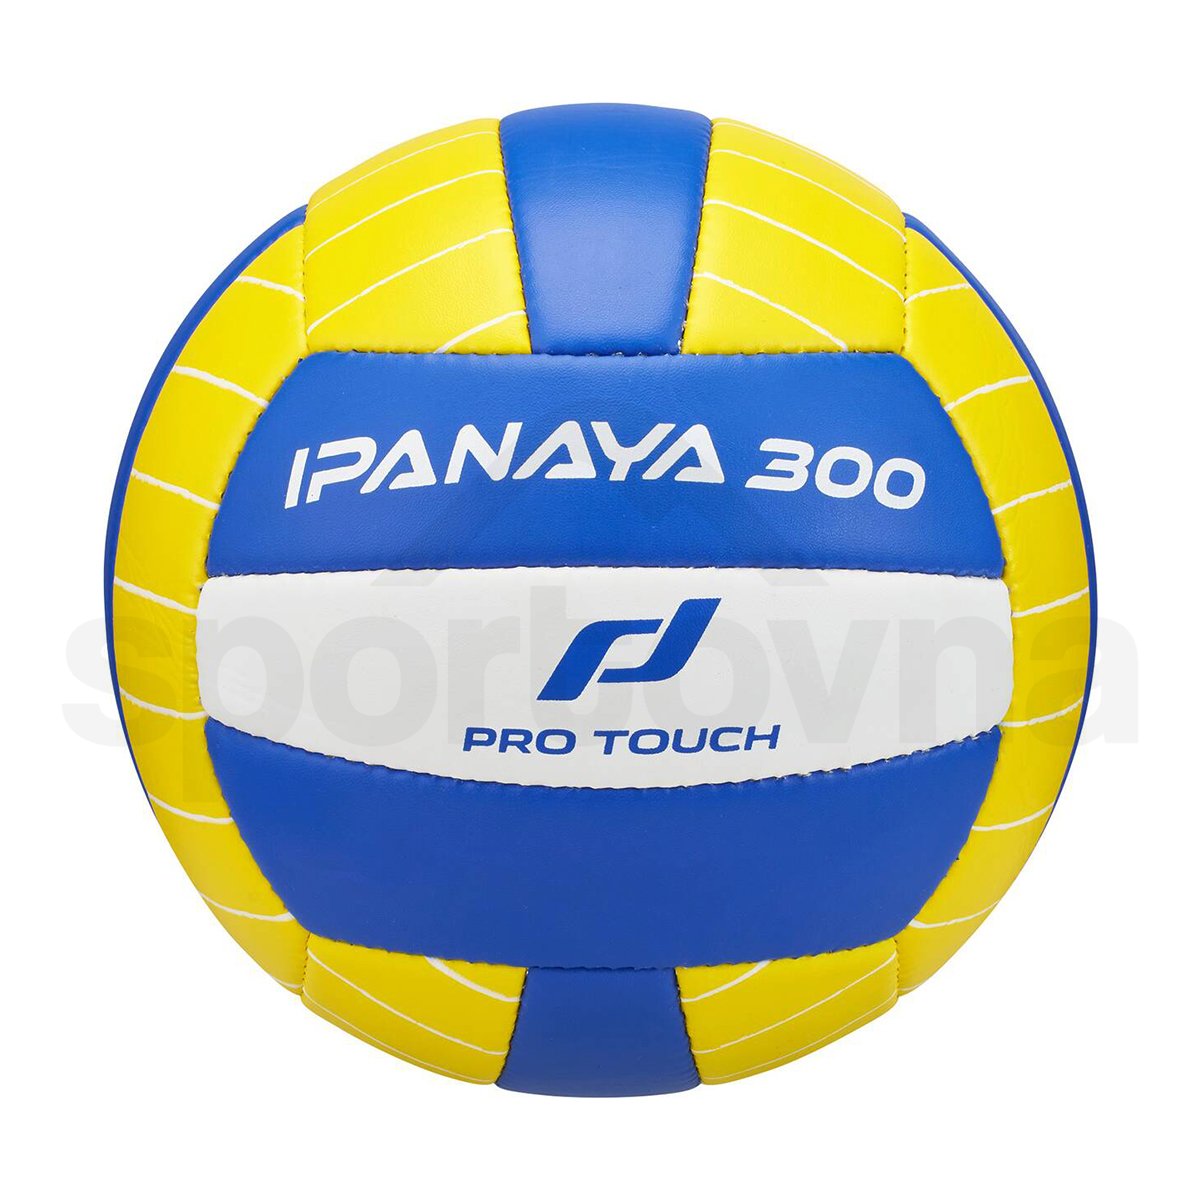 Míč Pro Touch Ipanaya 300 - žlutá/modrá